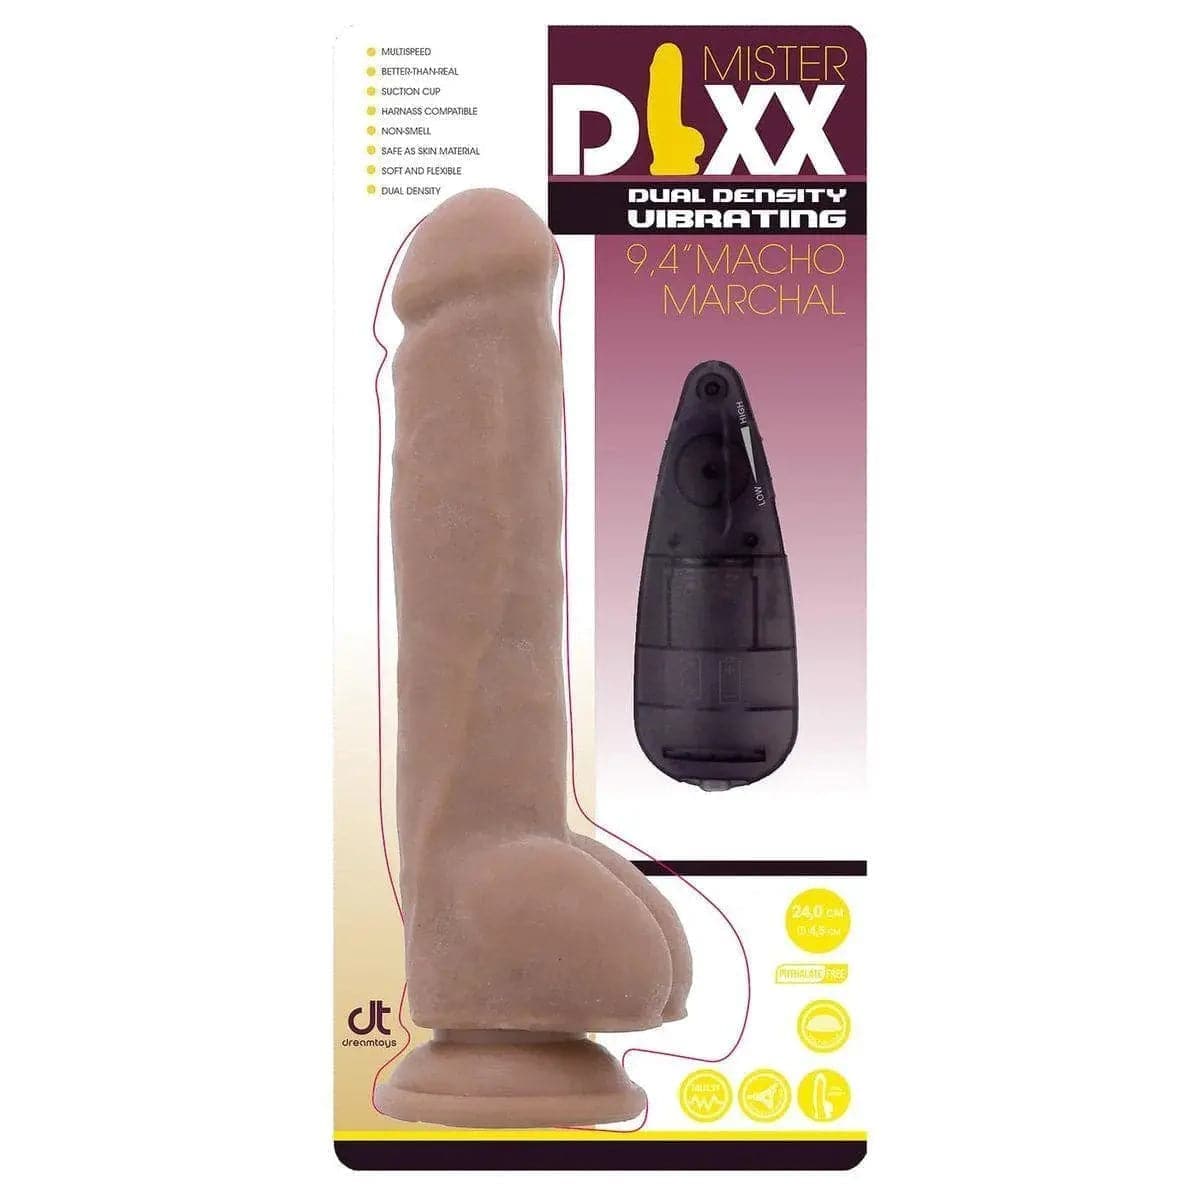 Mr.DIXX Mister Vibrador Realista Macho Marchal, 24cm Ø3.6cm, vibração regulável  Mr.DIXX   